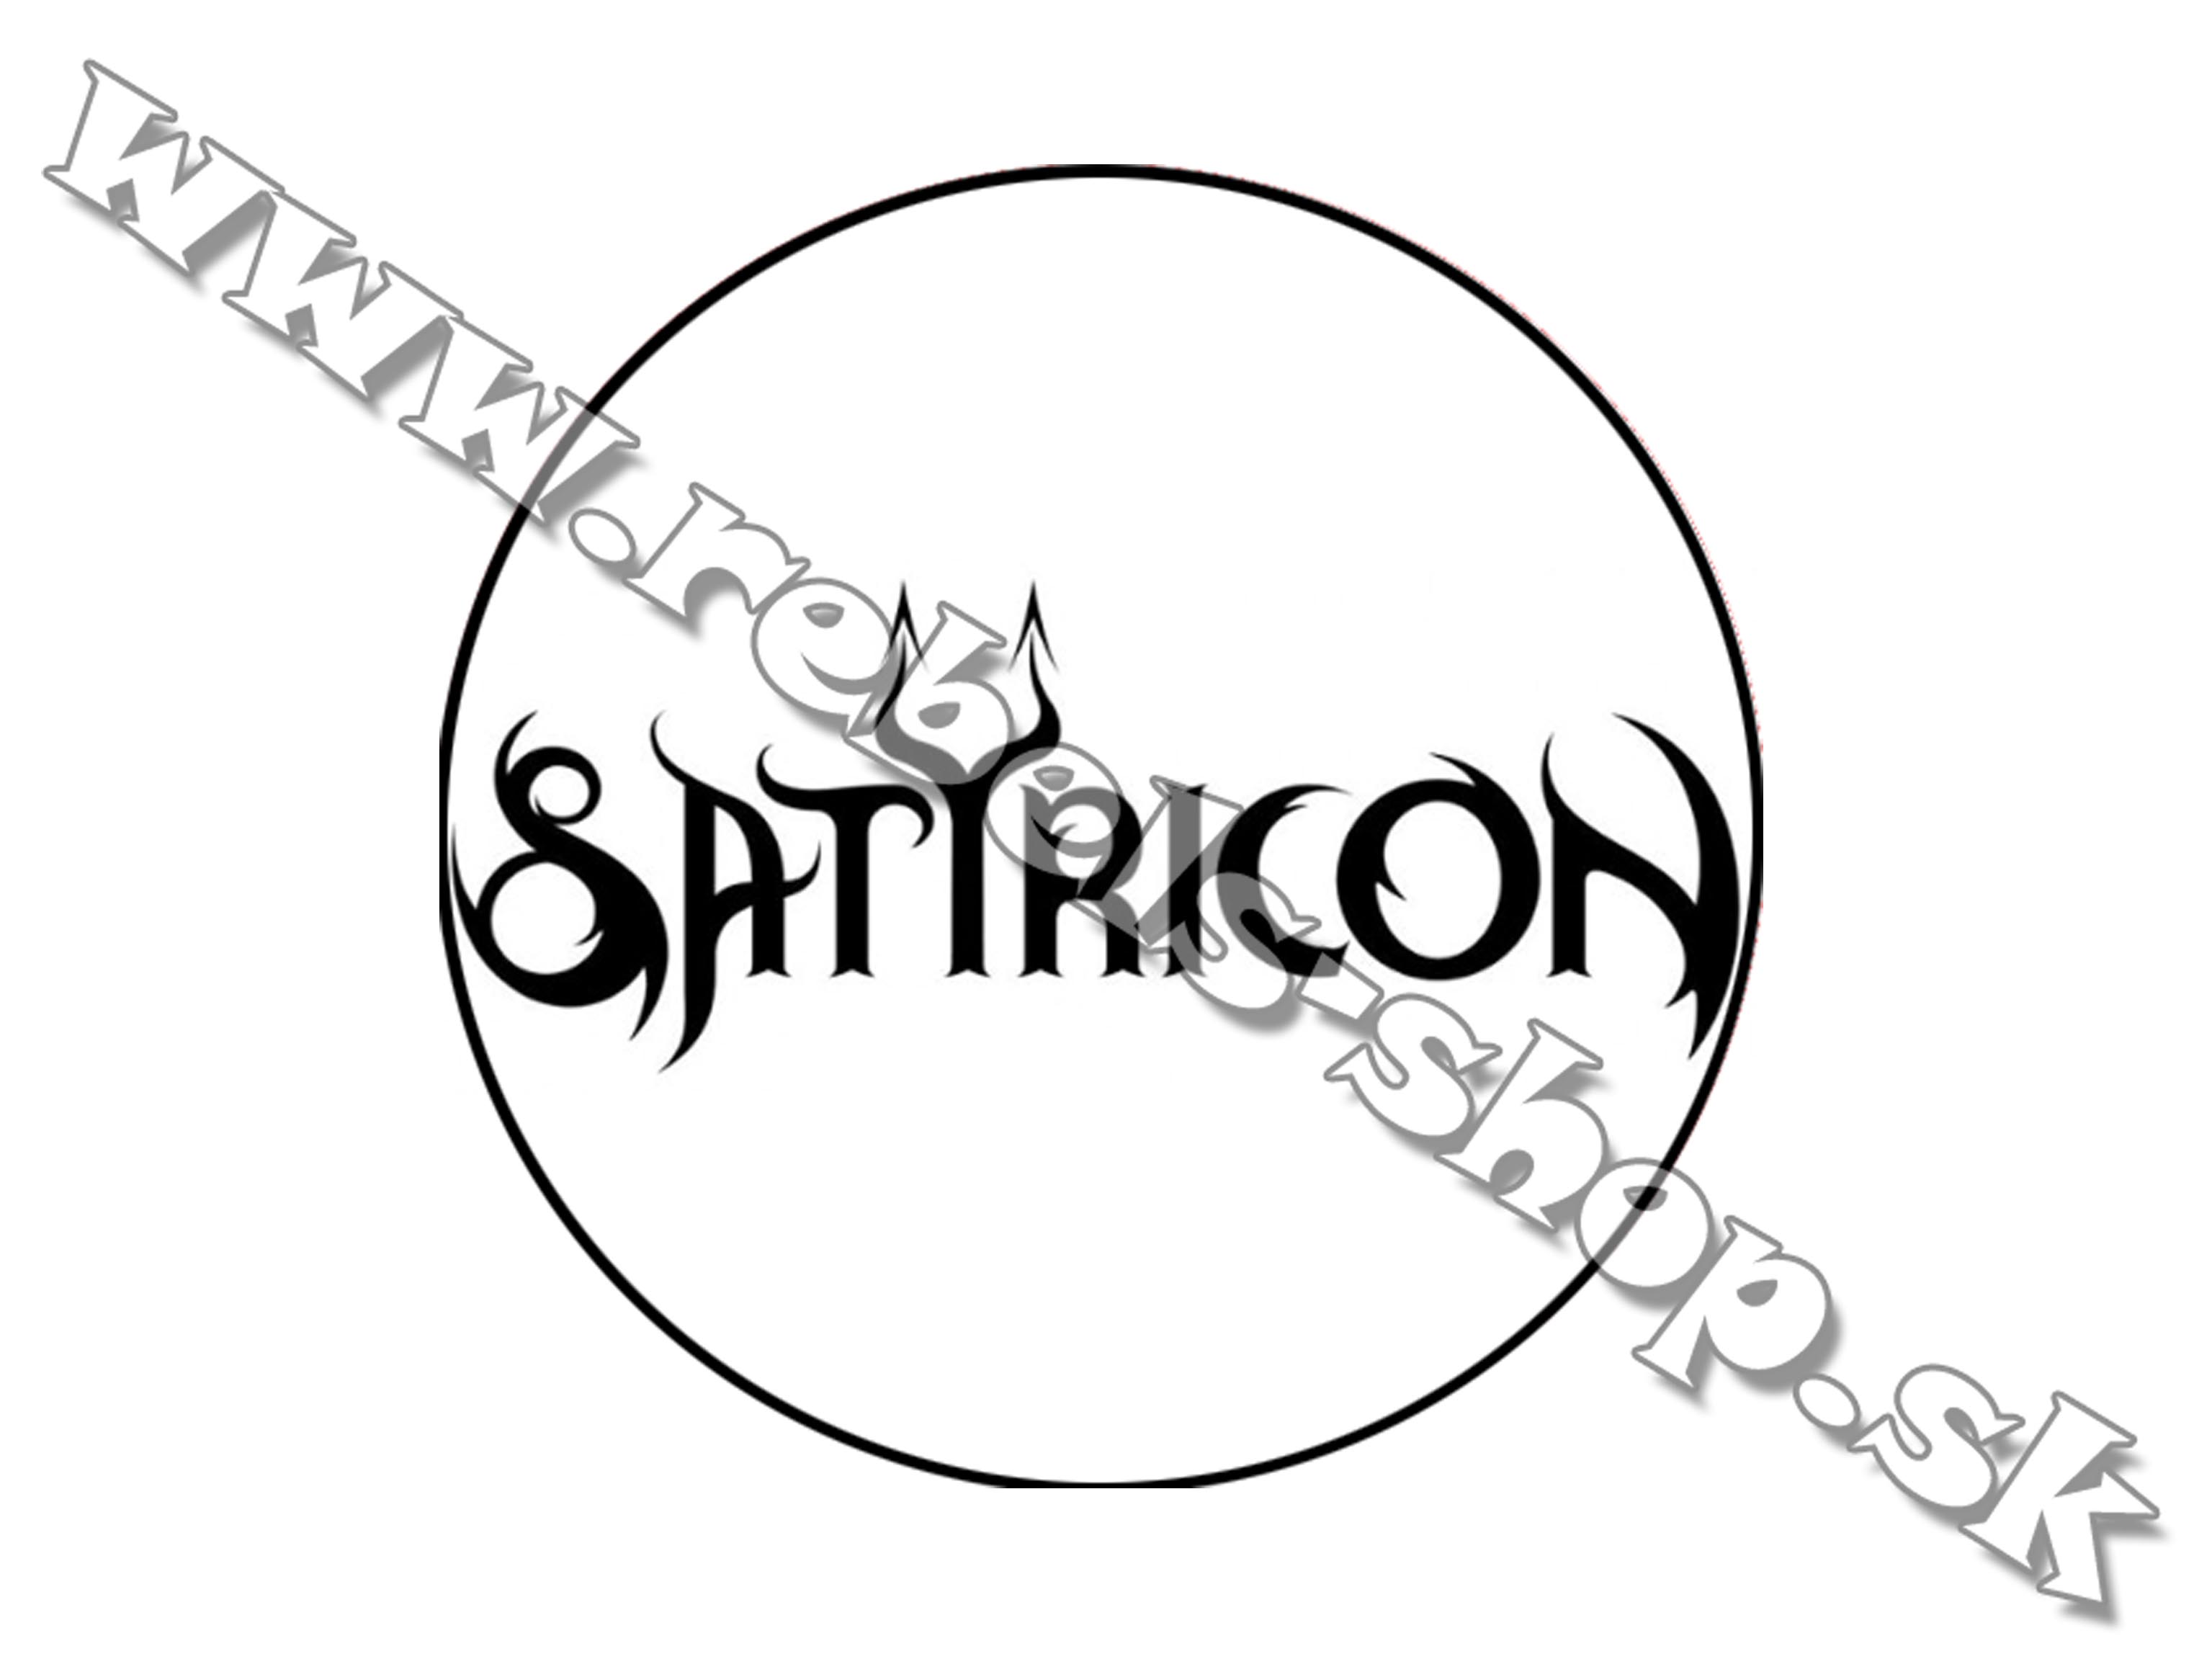 Odznak "Satyricon"